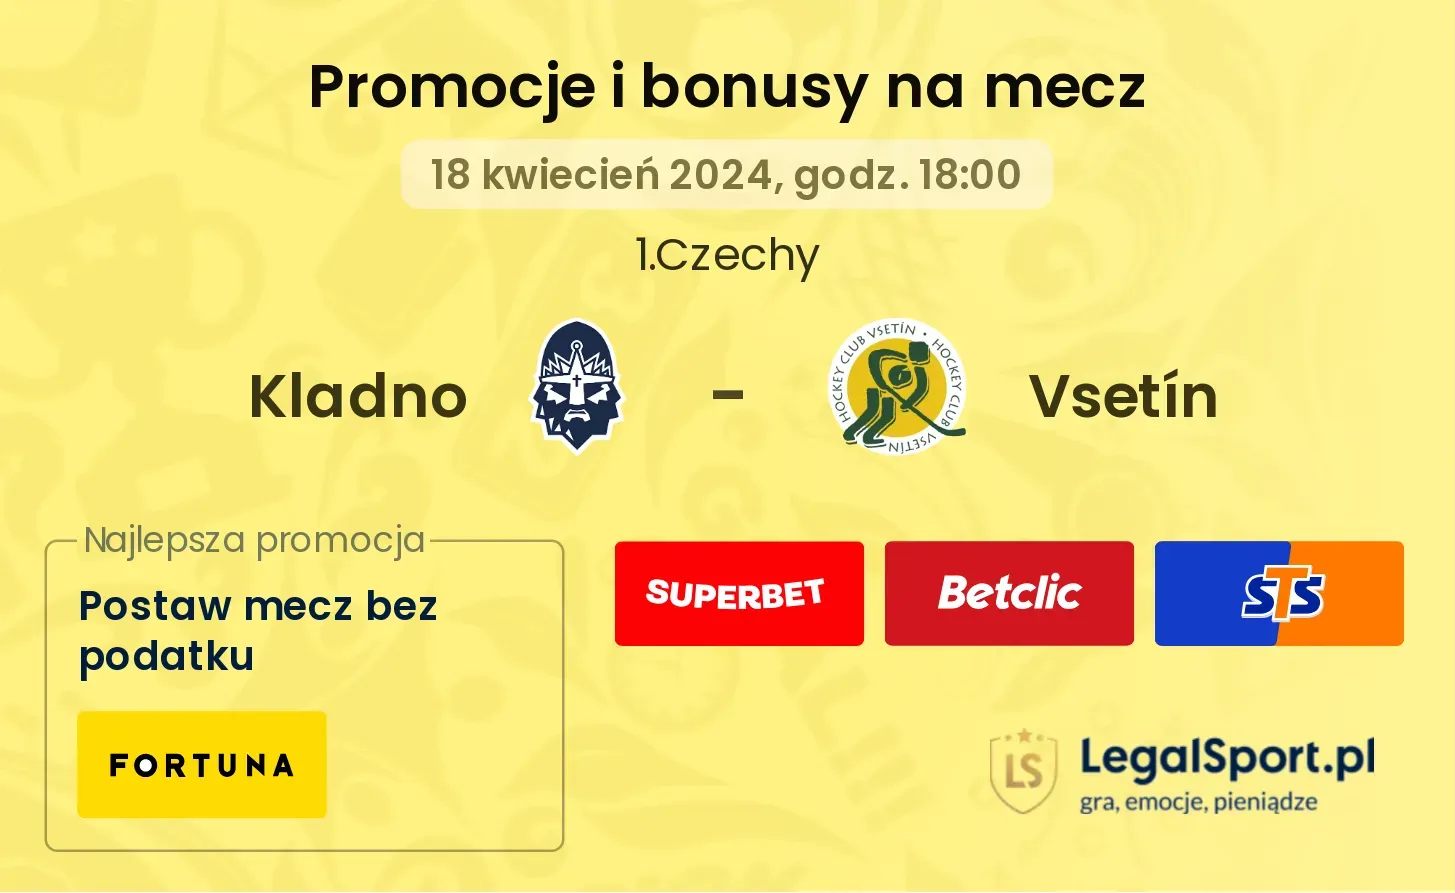 Kladno - Vsetín promocje bonusy na mecz